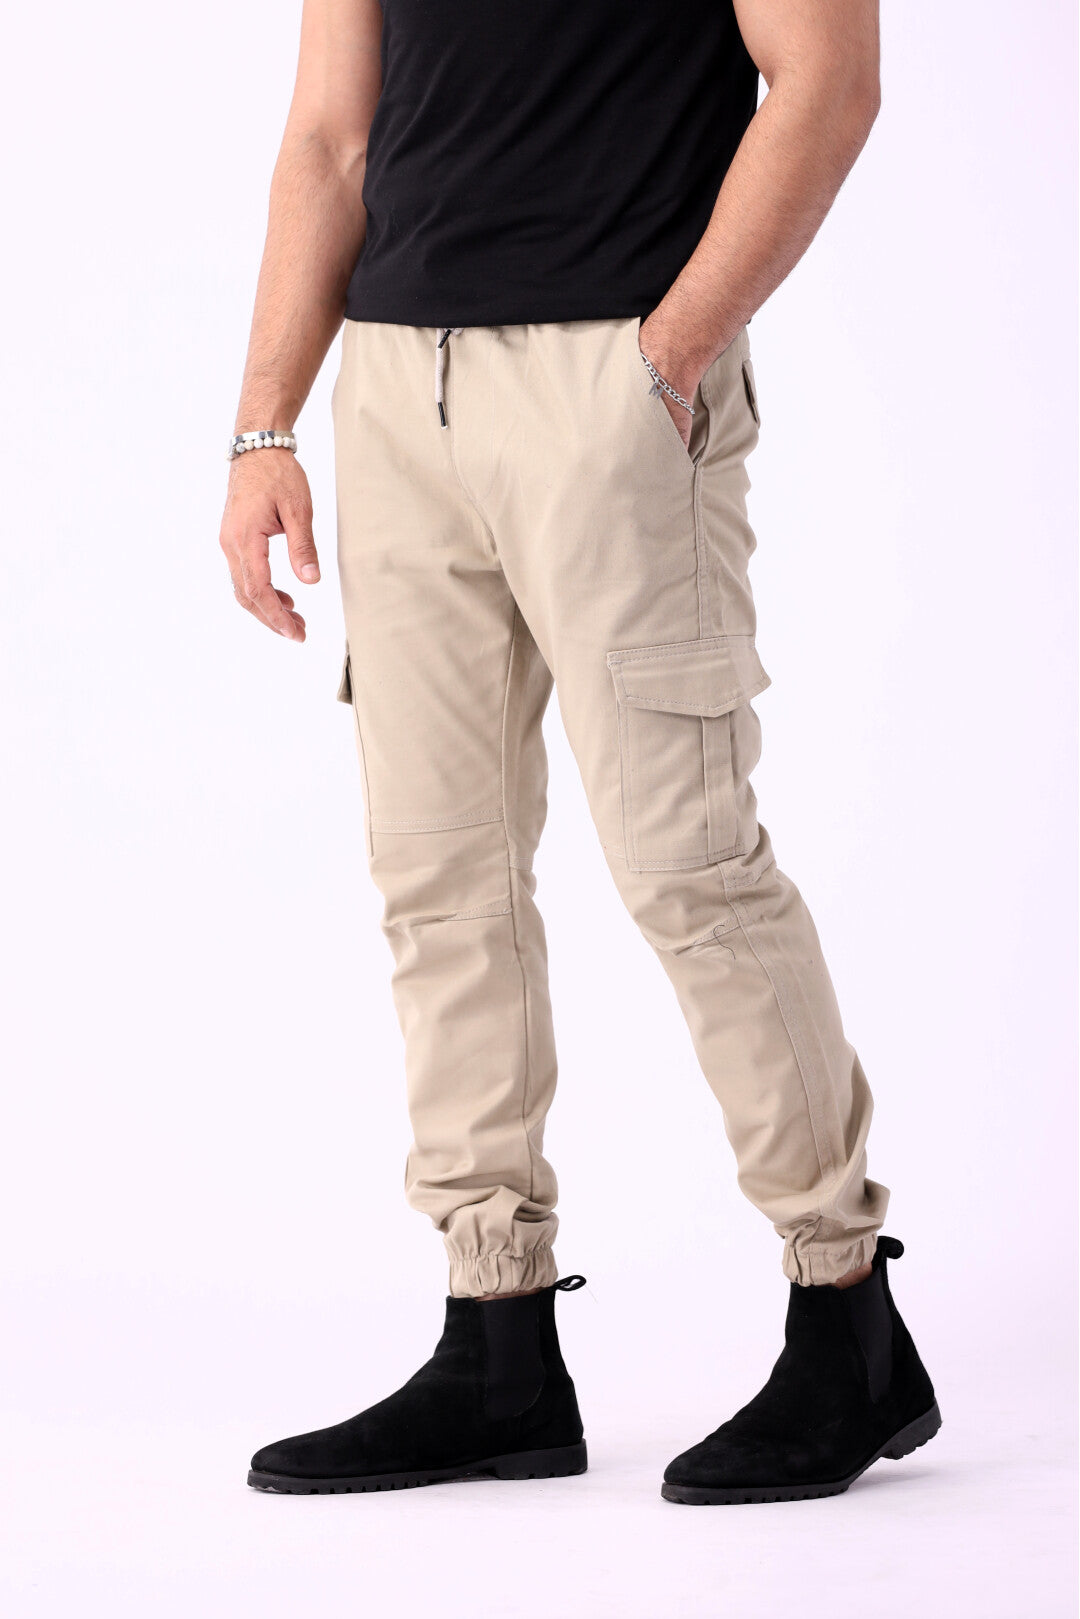 Cargo Wear Men'S Full 6 Pocket Work Pants Trousers - Walmart.com